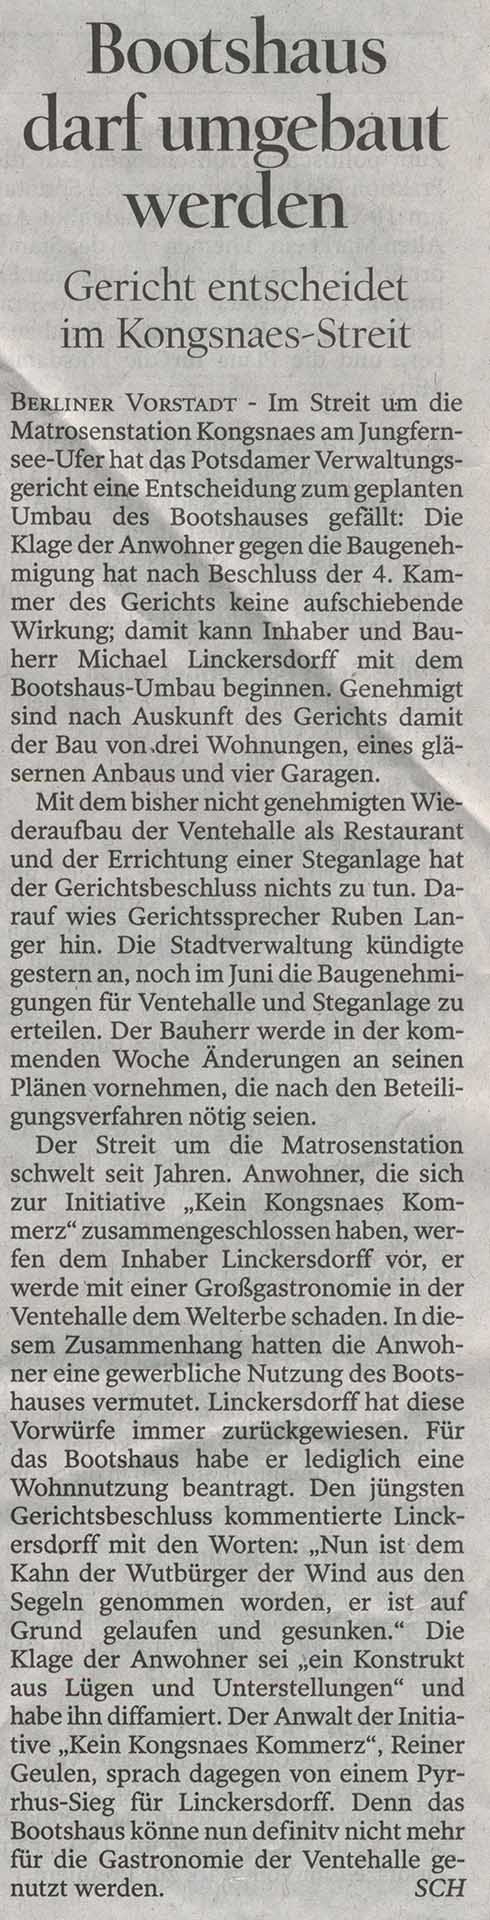 Potsdamer Neueste Nachrichten - 09.06.2012